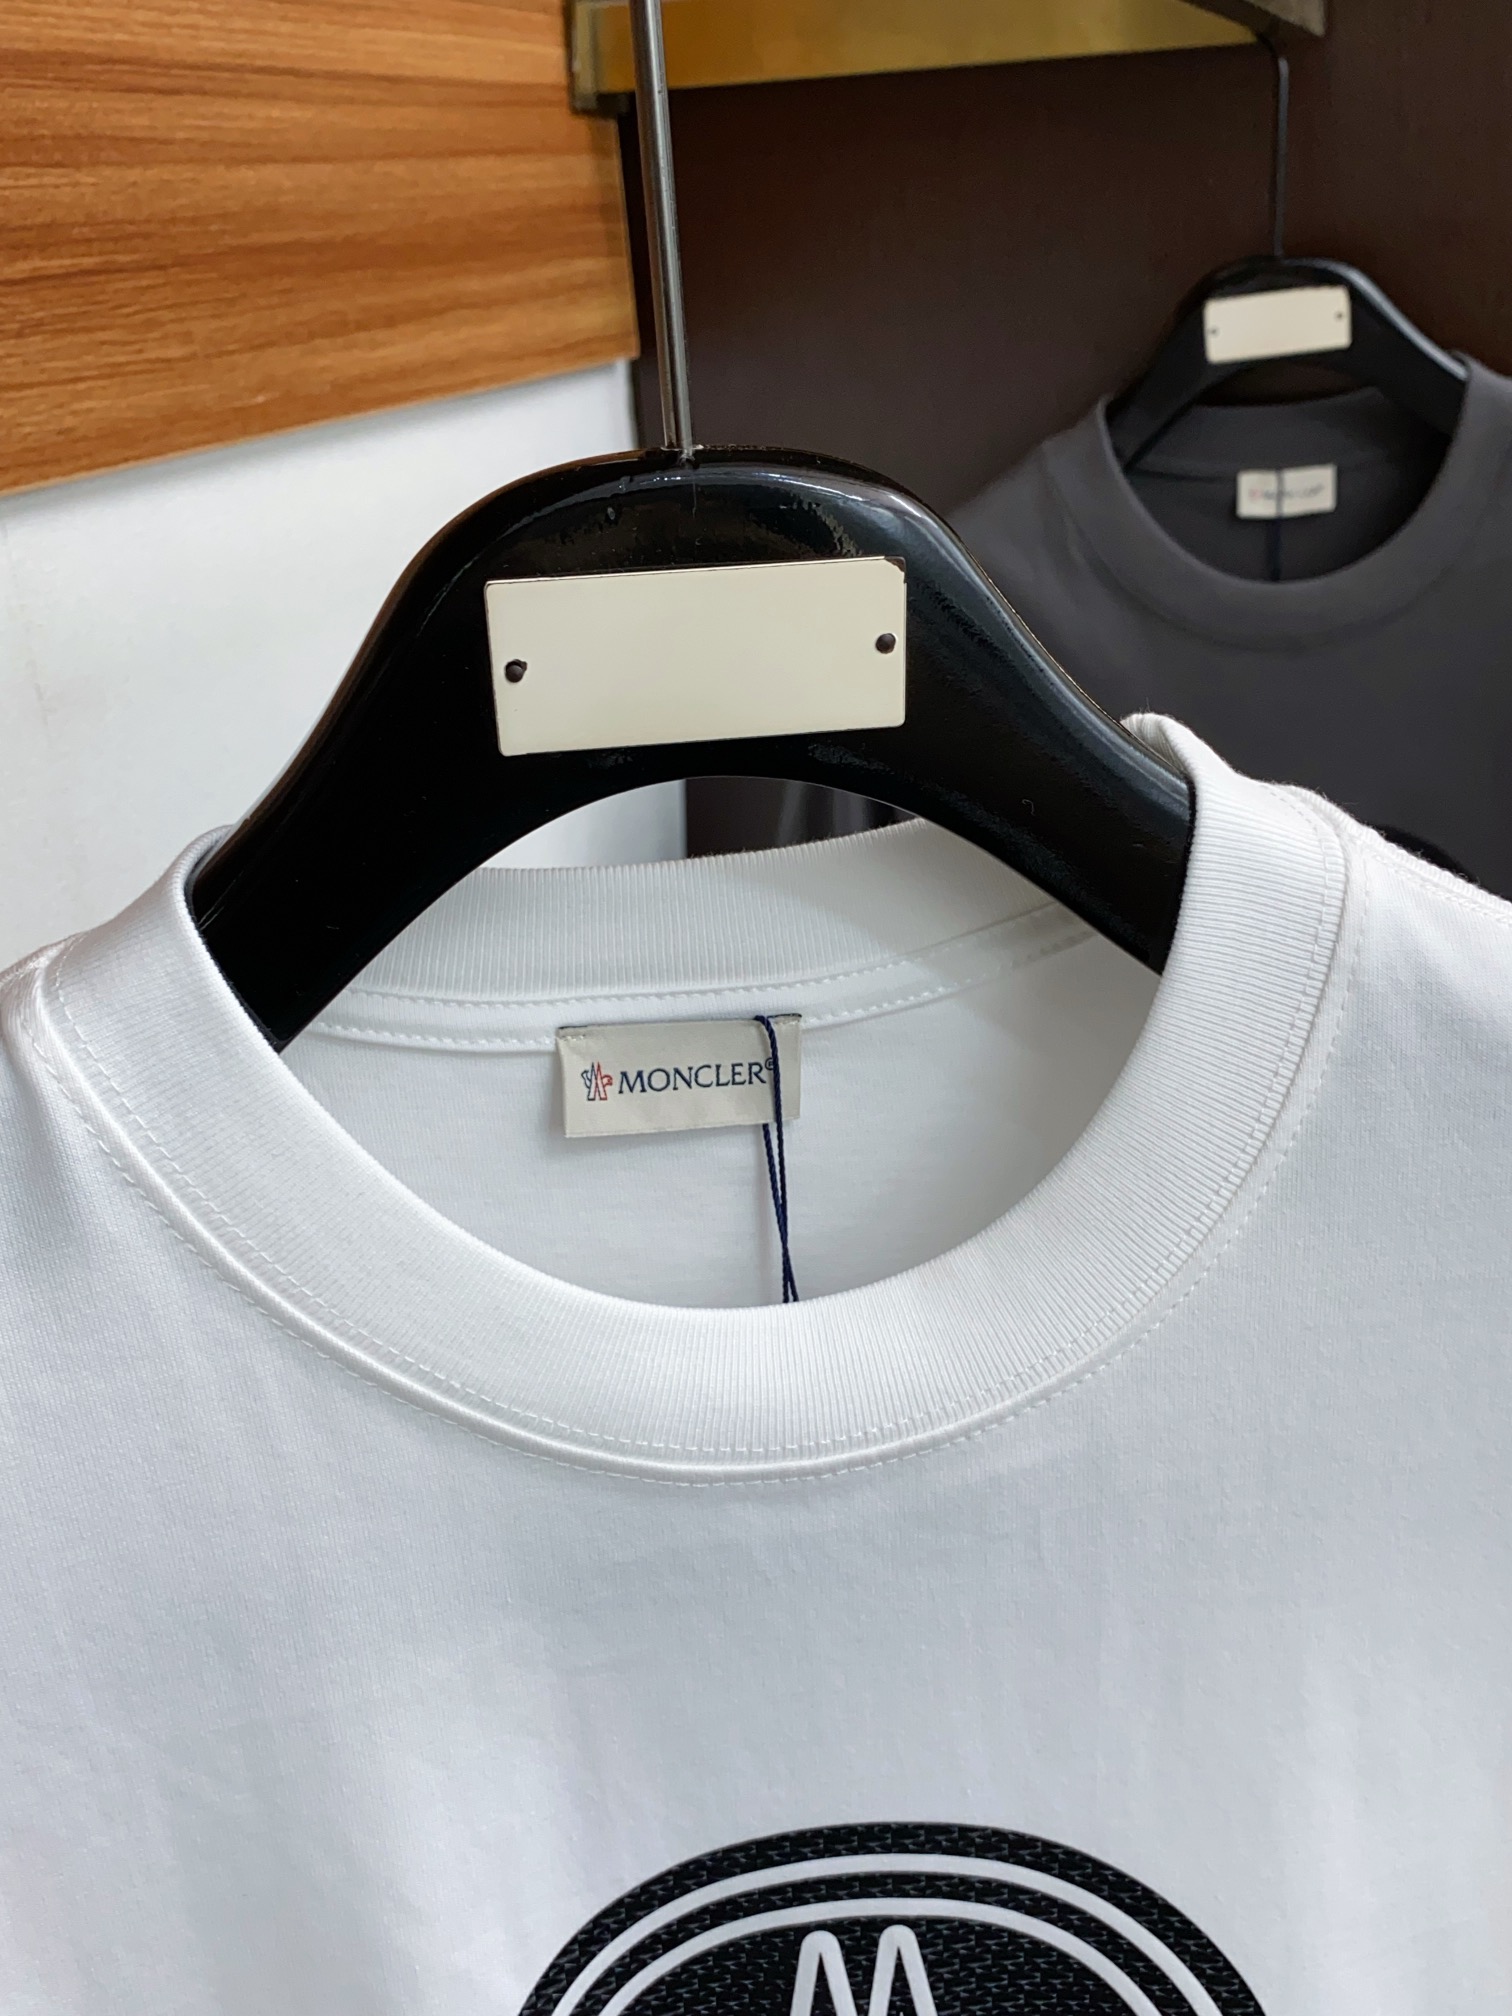 蒙口合身版型S-2xL24春夏早春新款短袖T恤顶级制作工艺进口纯棉面料手感细腻每个字母饱满立体清晰,一眼